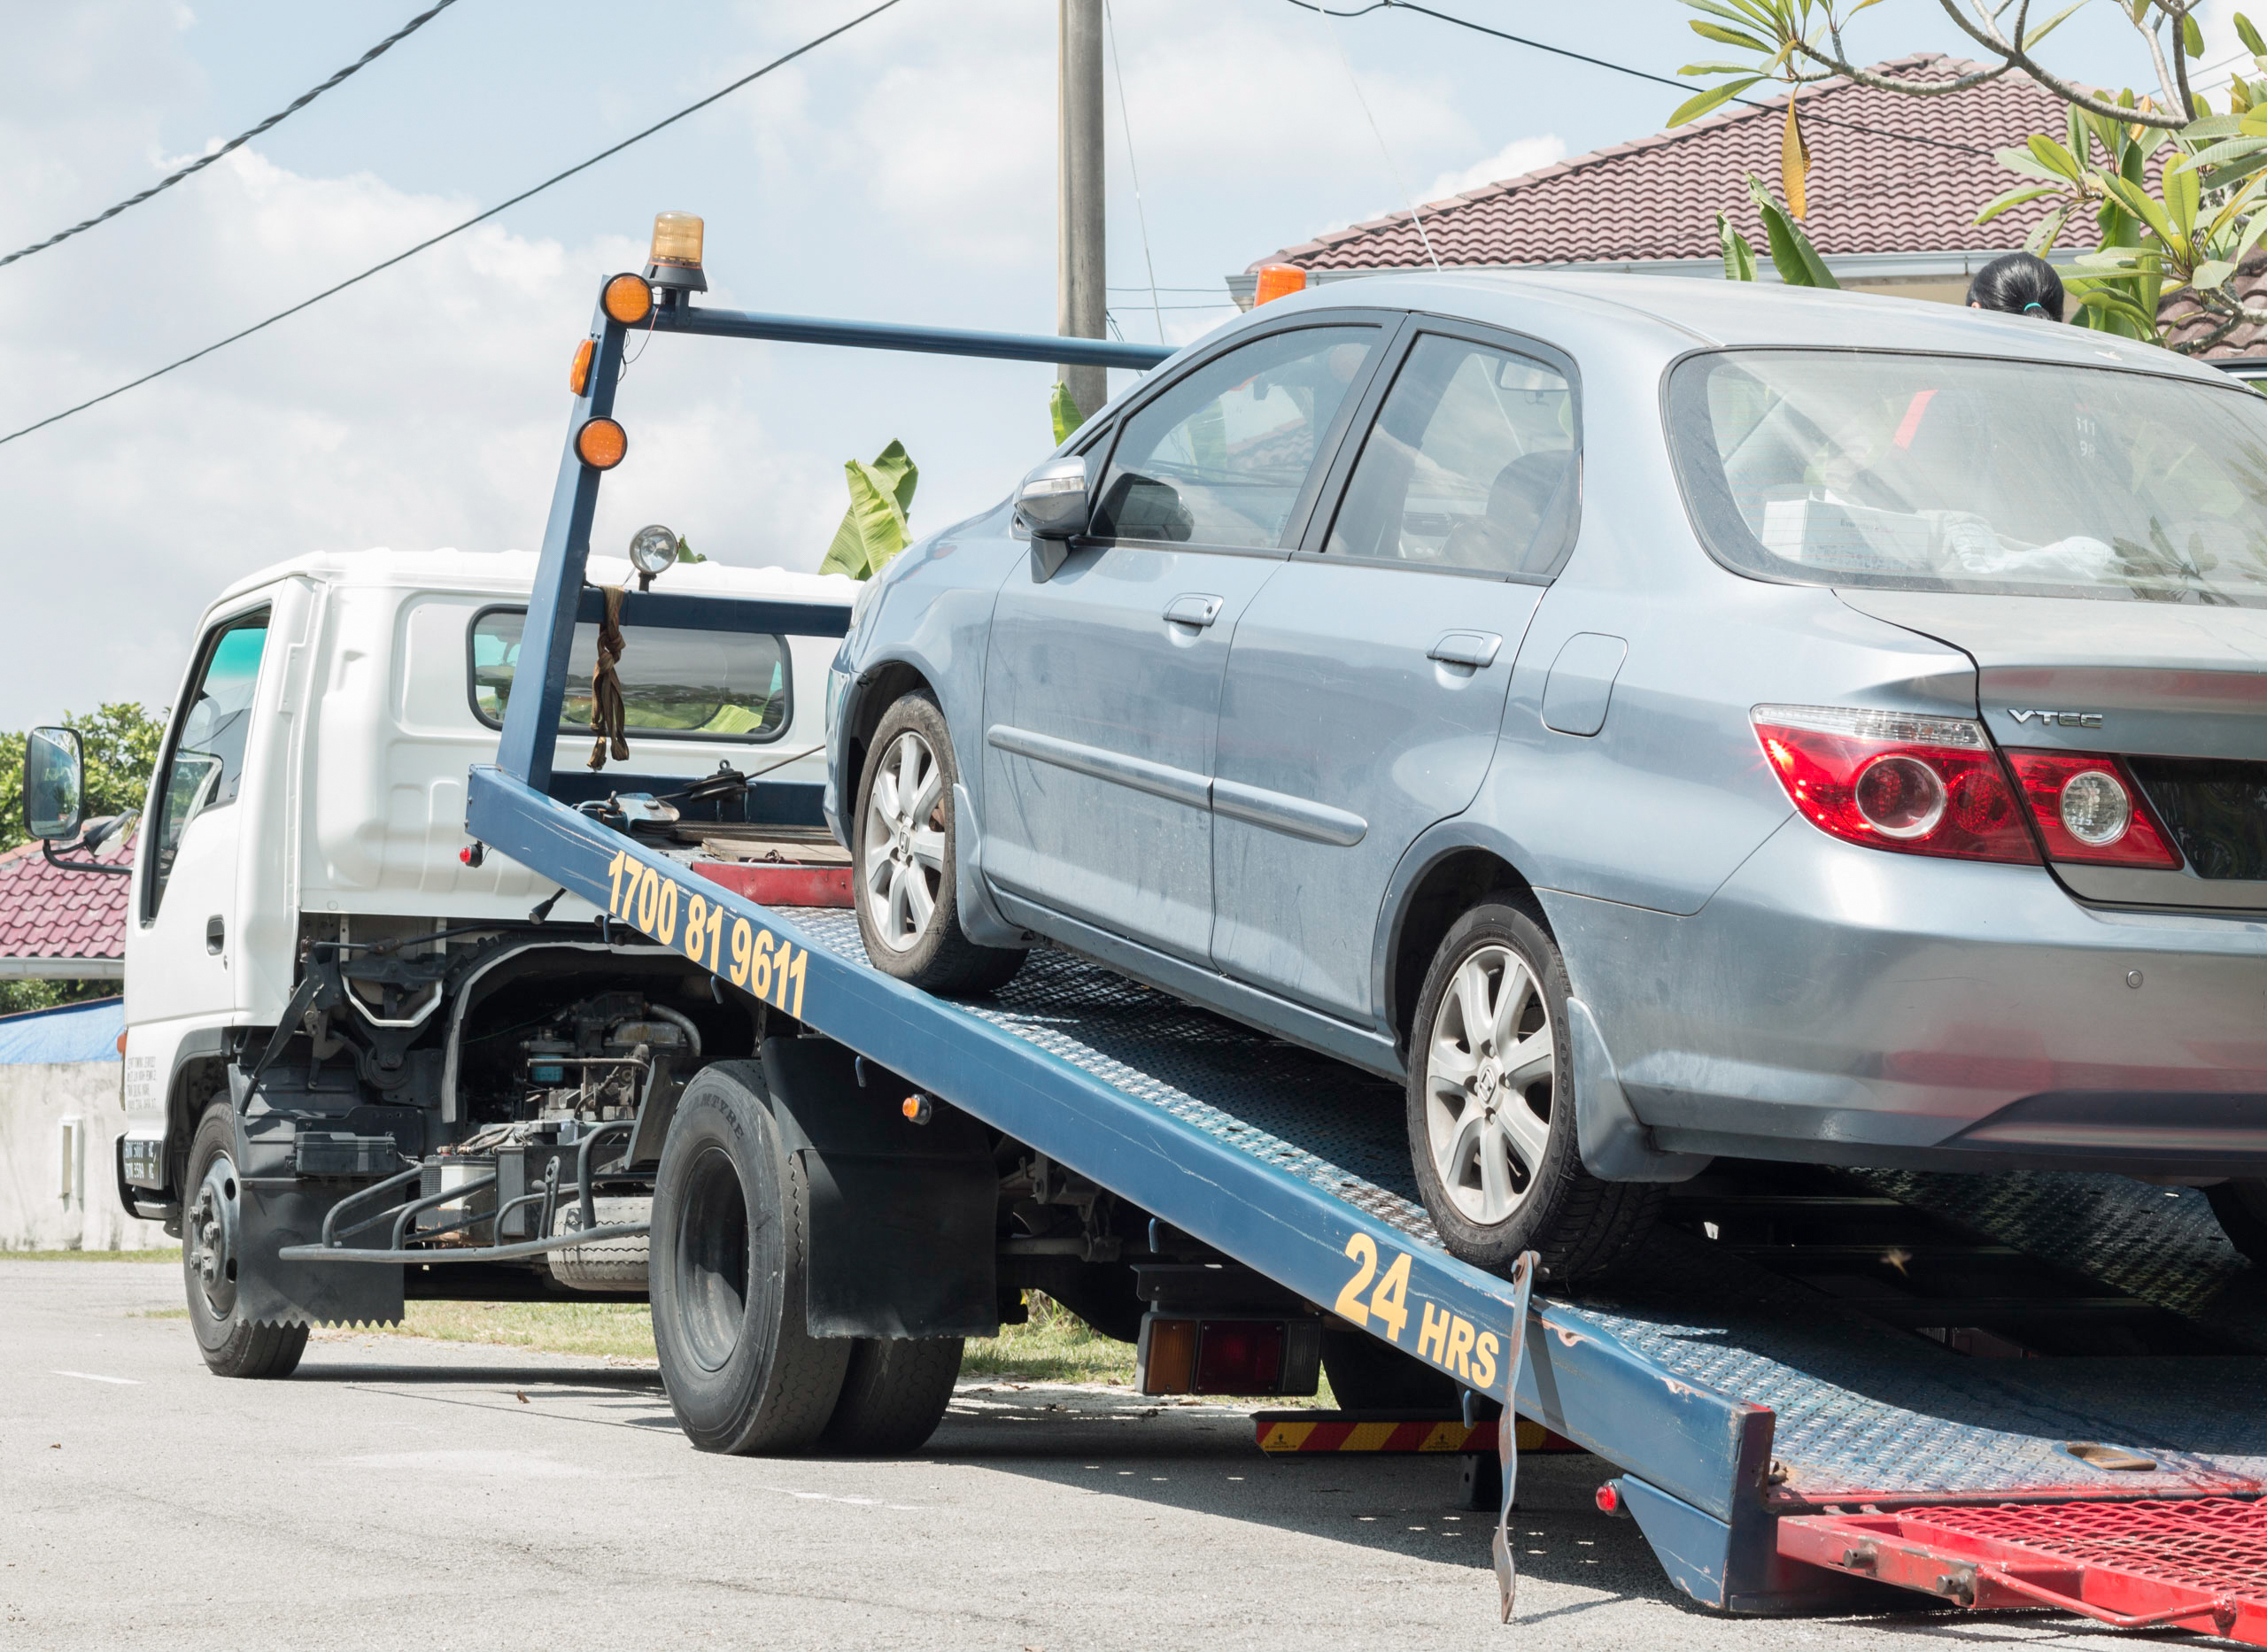 Un véhicule endommagé en train d'être remorqué | Source : Shutterstock